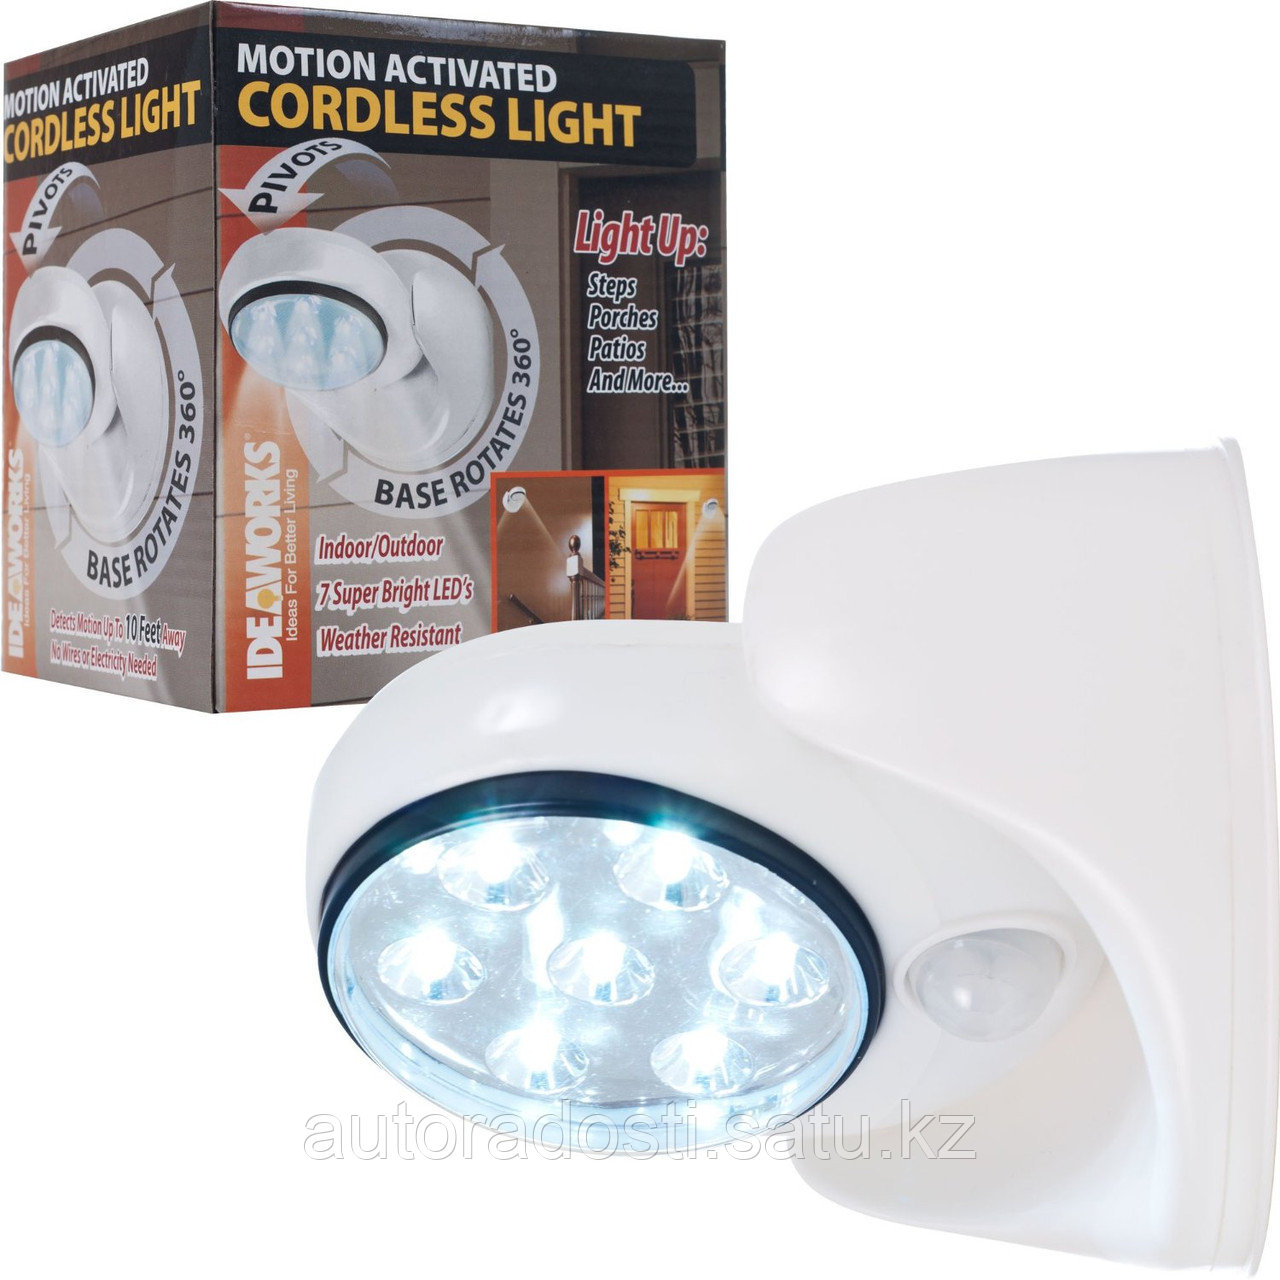 Лампа-светильник Light Angel с датчиком движения и датчиком света (cordless light)